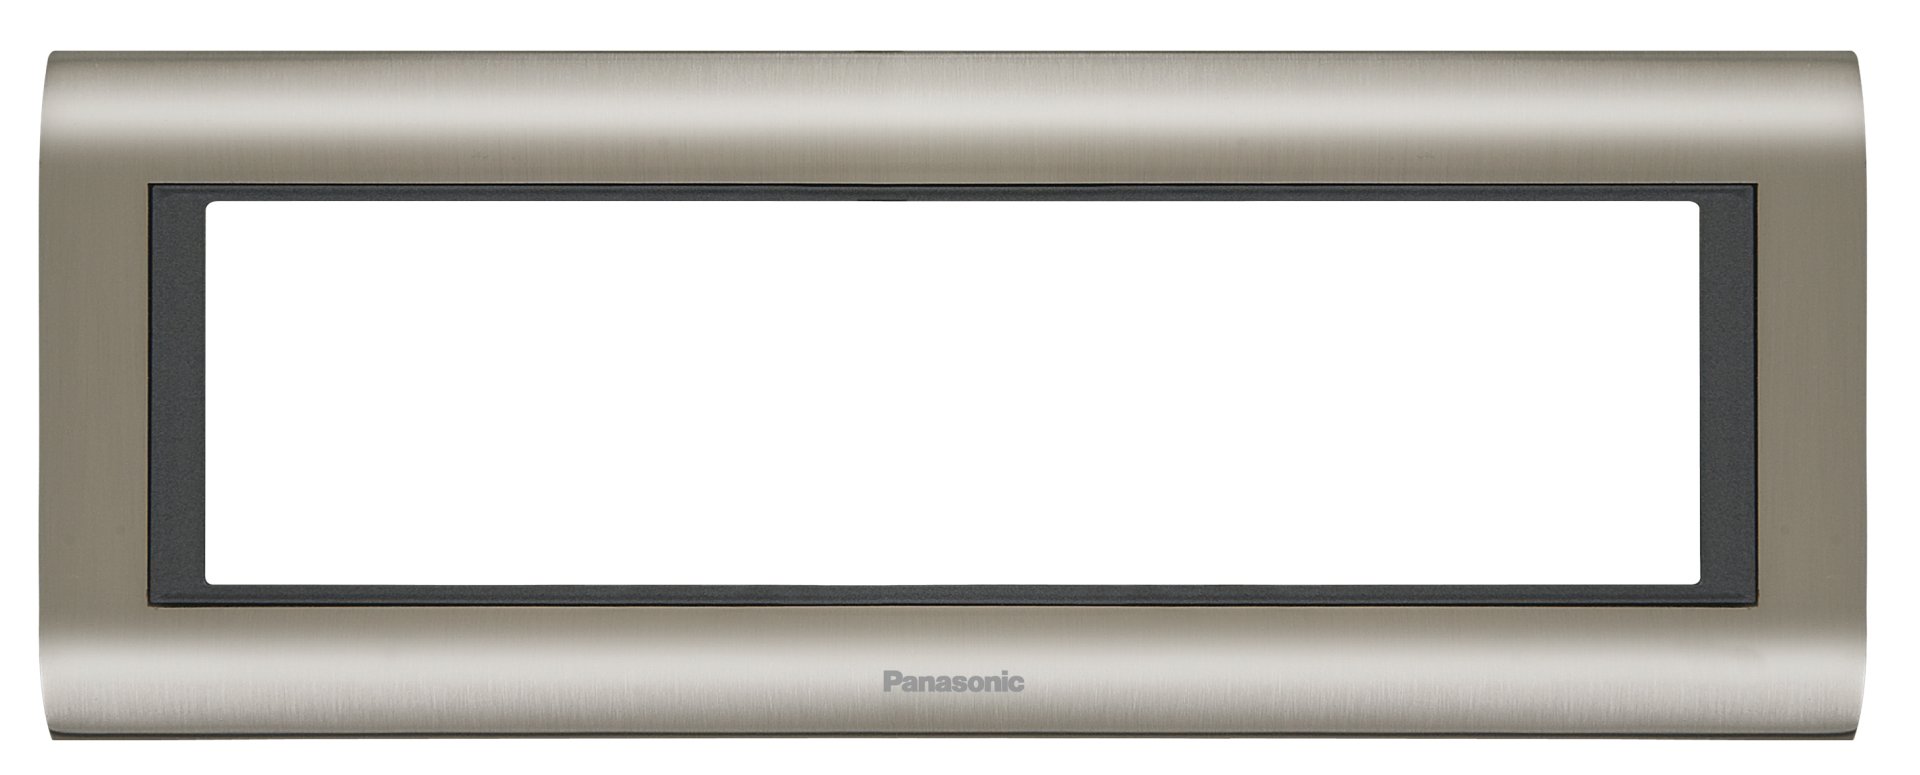 Viko Panasonic Thea Sistema 7M Chrome Füme Çerçeve